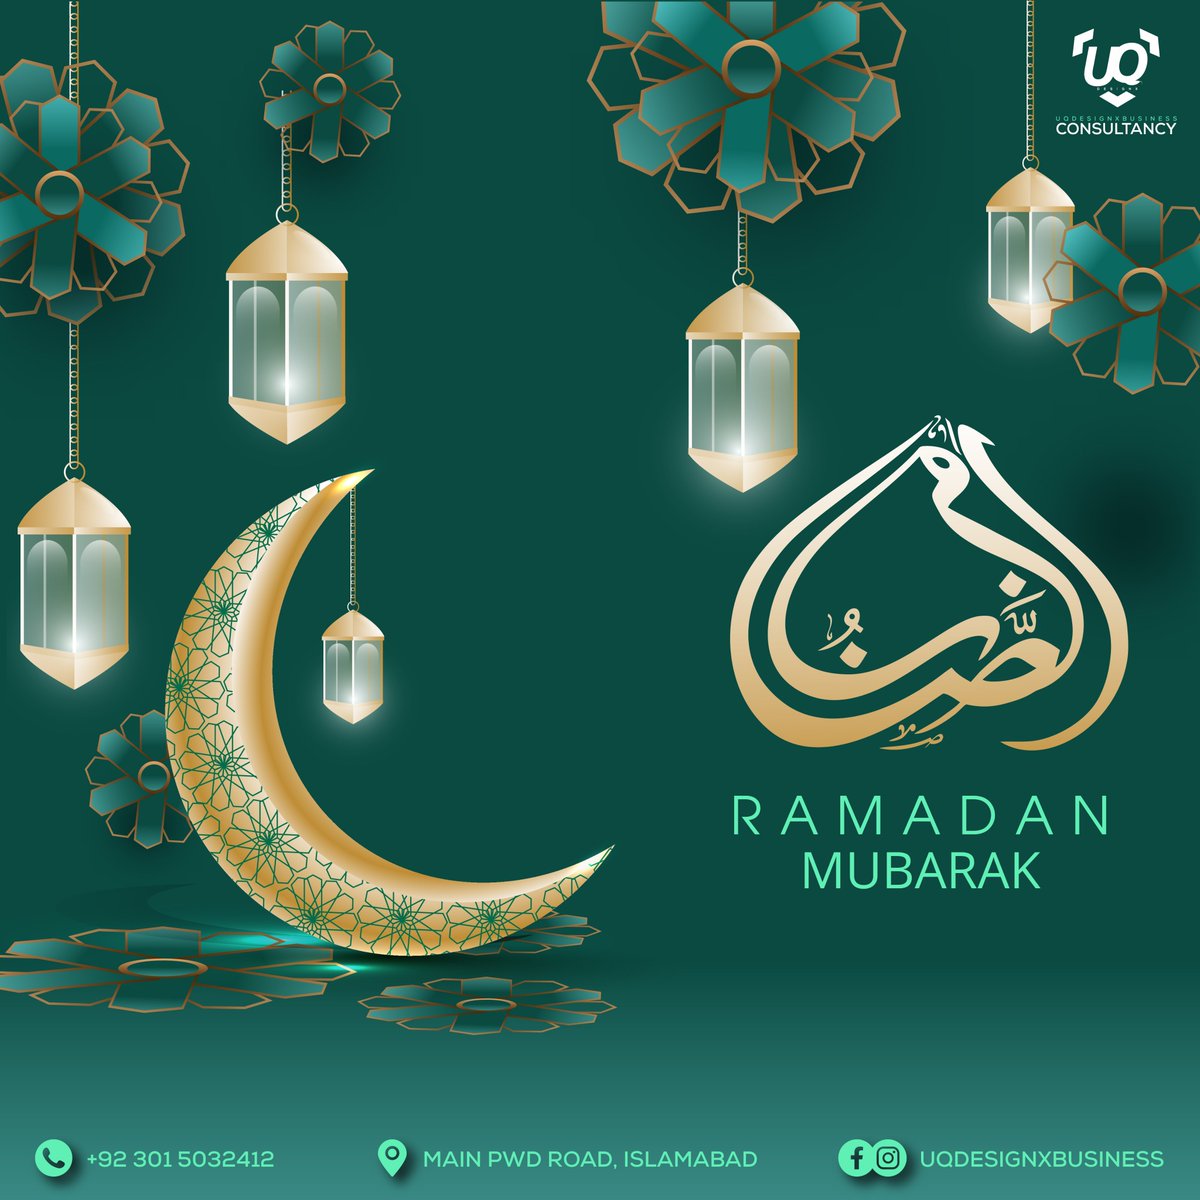 Ramadan Mubarak to all my dear friends and family !
#ramadan #ramadan2022 #ramadanmubarak #alhamdulillah #islamic #islamicart #islamicquotes #islamicreminder #ramadankareem #islamicreminders #uqdesignx #uqdesignxconsultancy #islamicpost #dua #muslim #muslimah #muslimillustrator